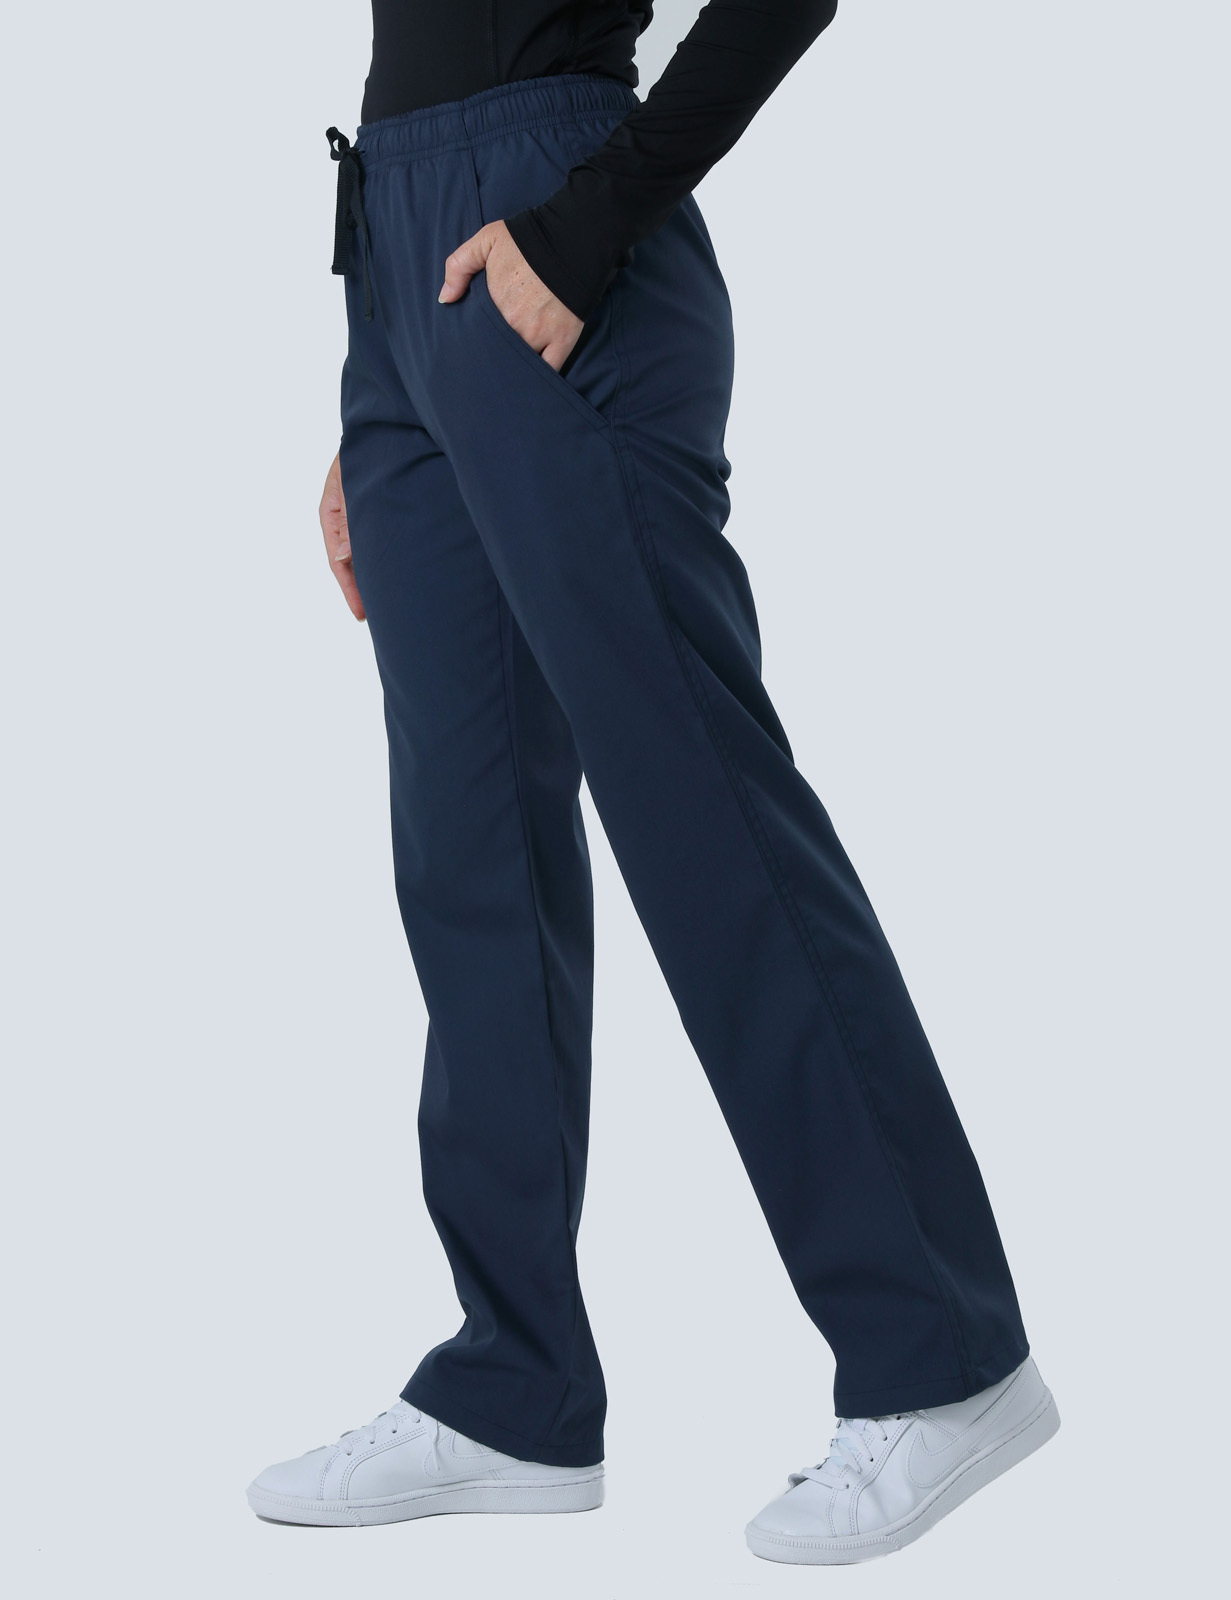 Women's Regular Cut Pants - Navy - Small